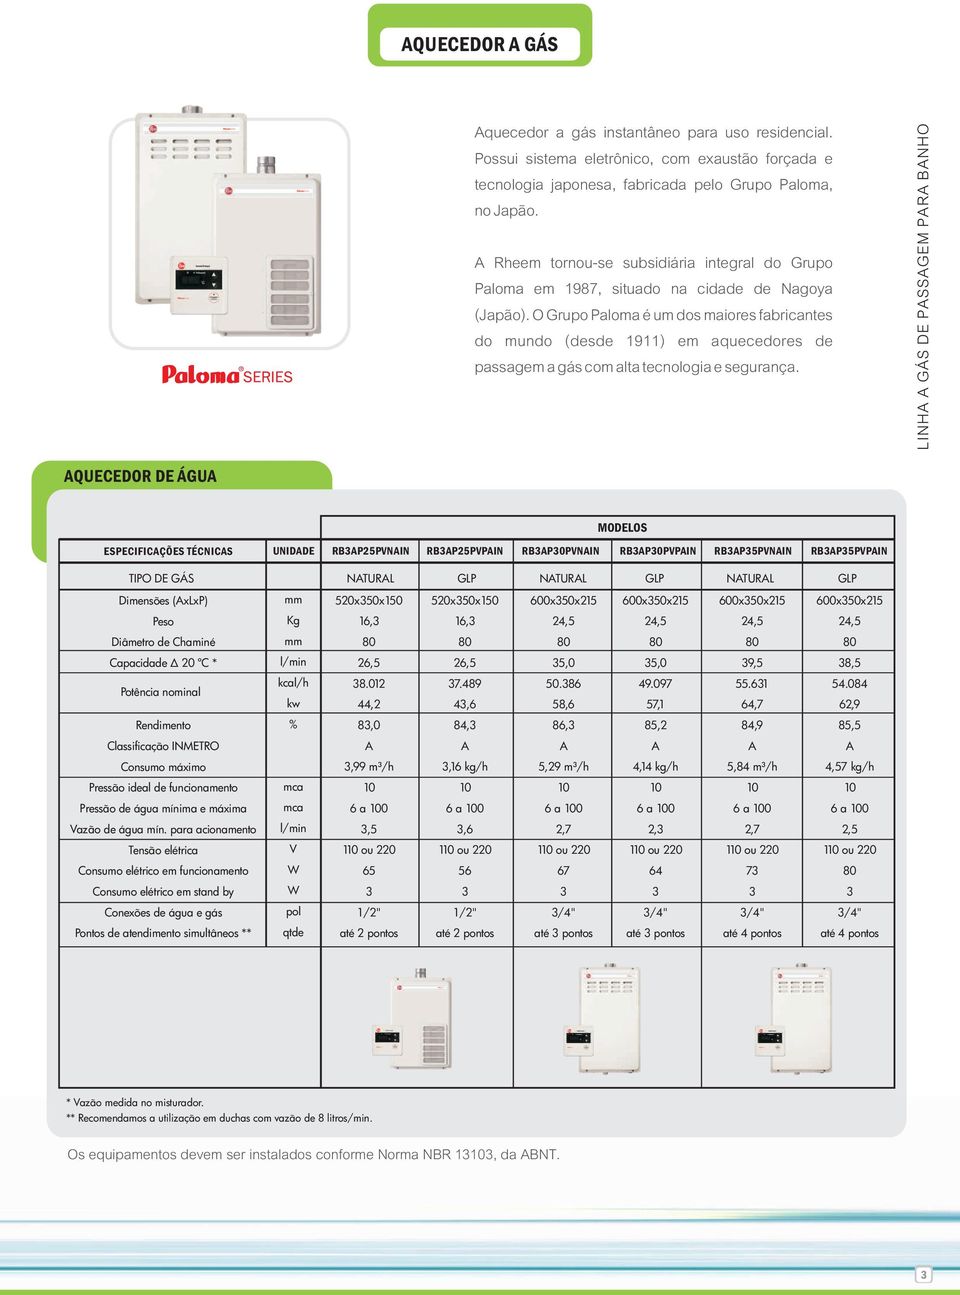 O Grupo Paloma é um dos maiores fabricantes do mundo (desde 1911) em aquecedores de passagem a gás com alta tecnologia e segurança.